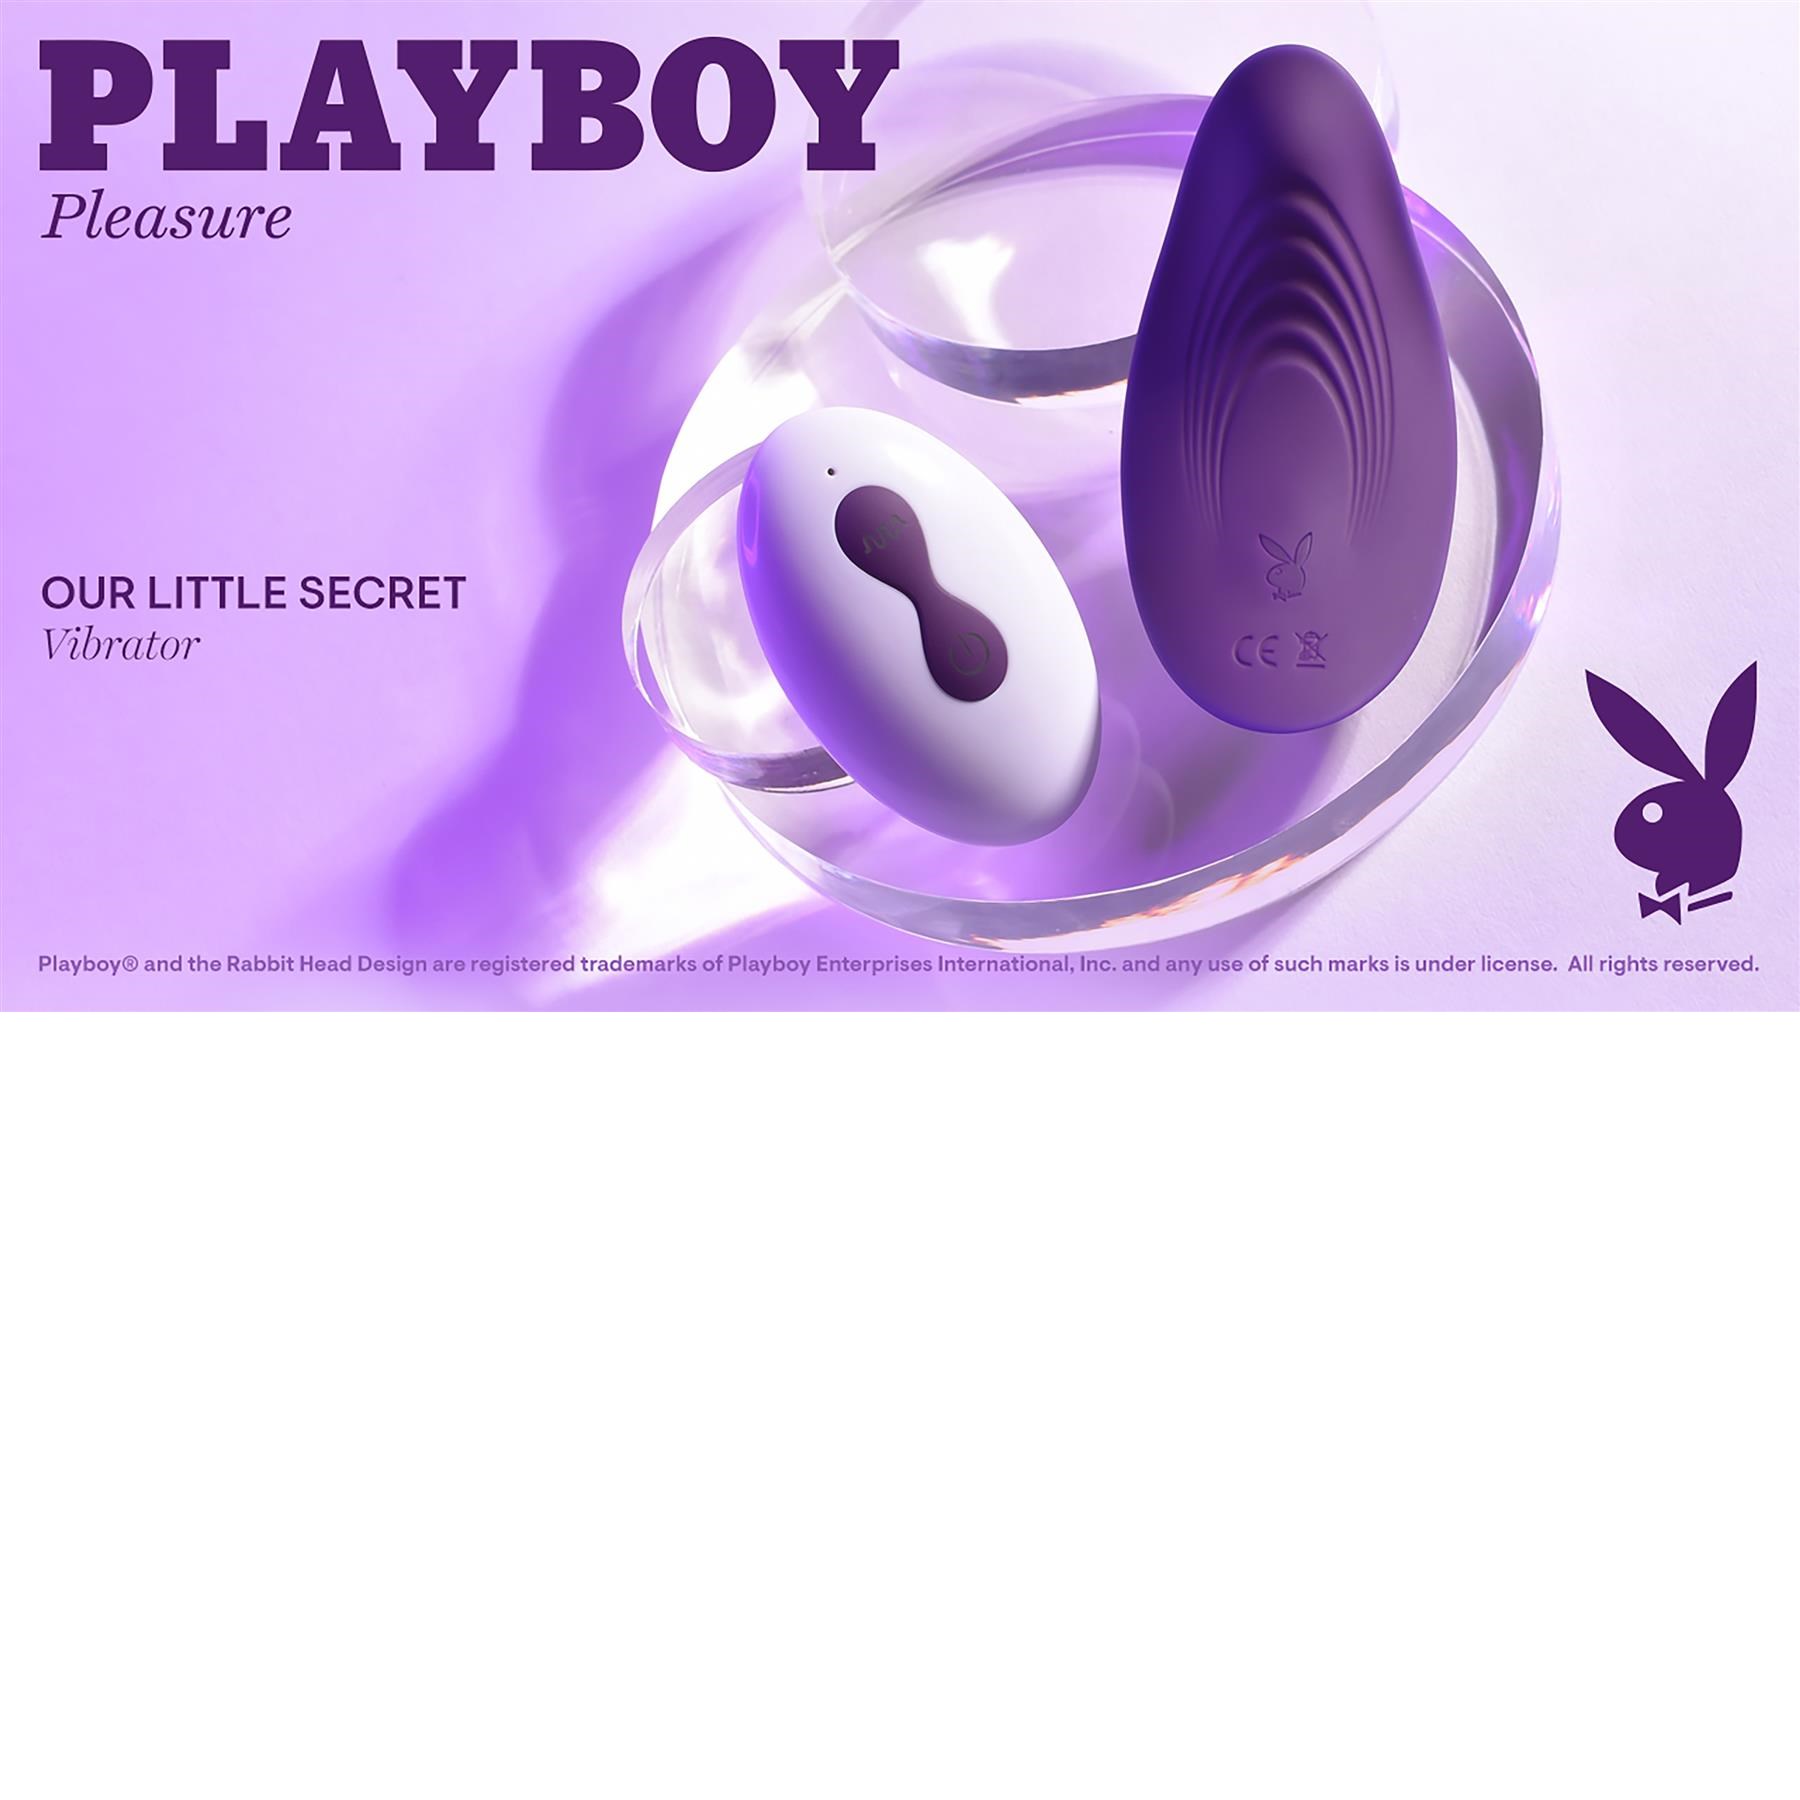 Playboy Pleasure Our Little Secret Panty Vibrator - Lifestyle Shot